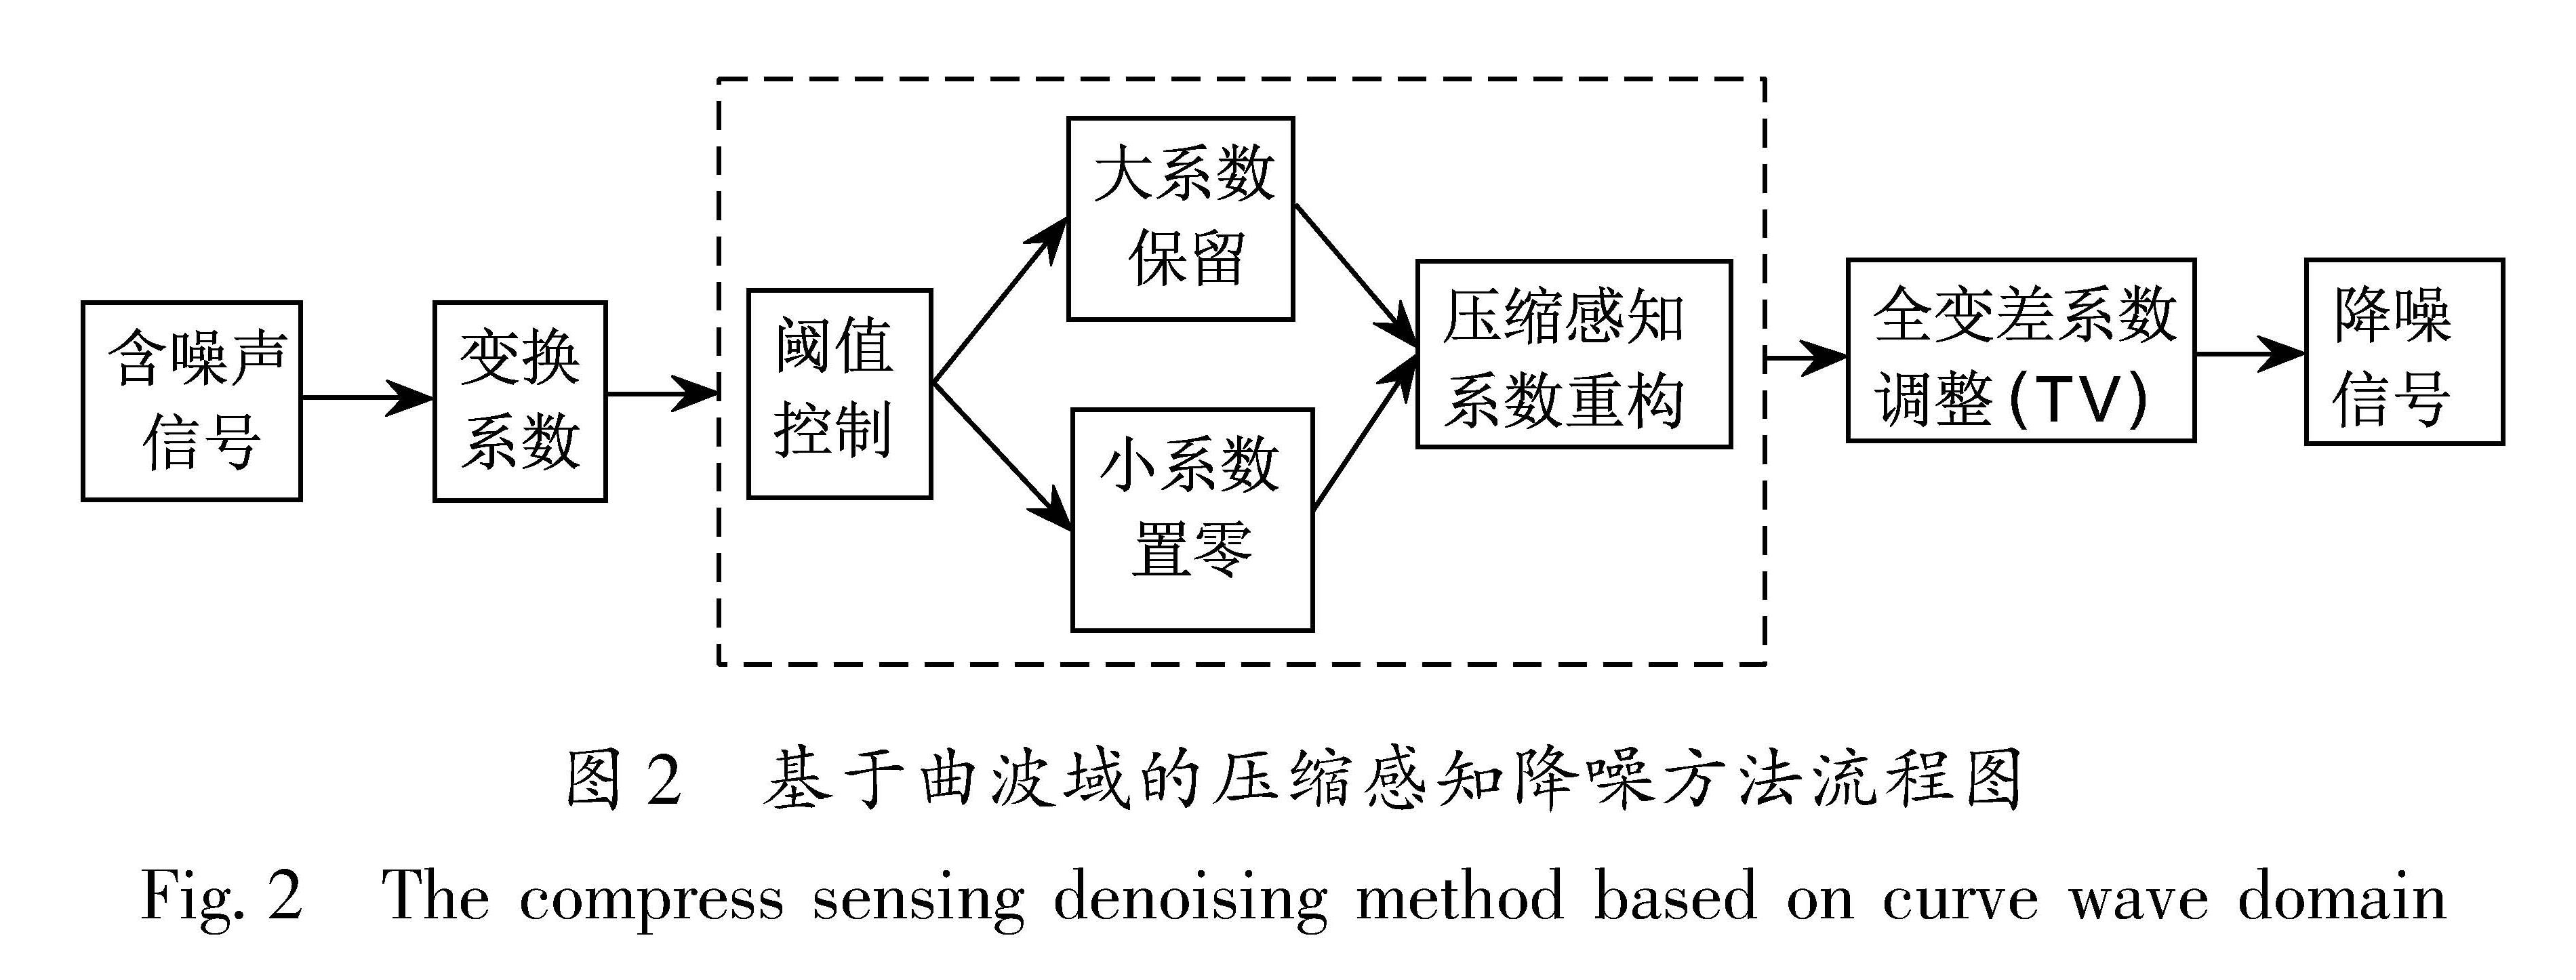 图2 基于曲波域的压缩感知降噪方法流程图<br/>Fig.2 The compress sensing denoising method based on curve wave domain